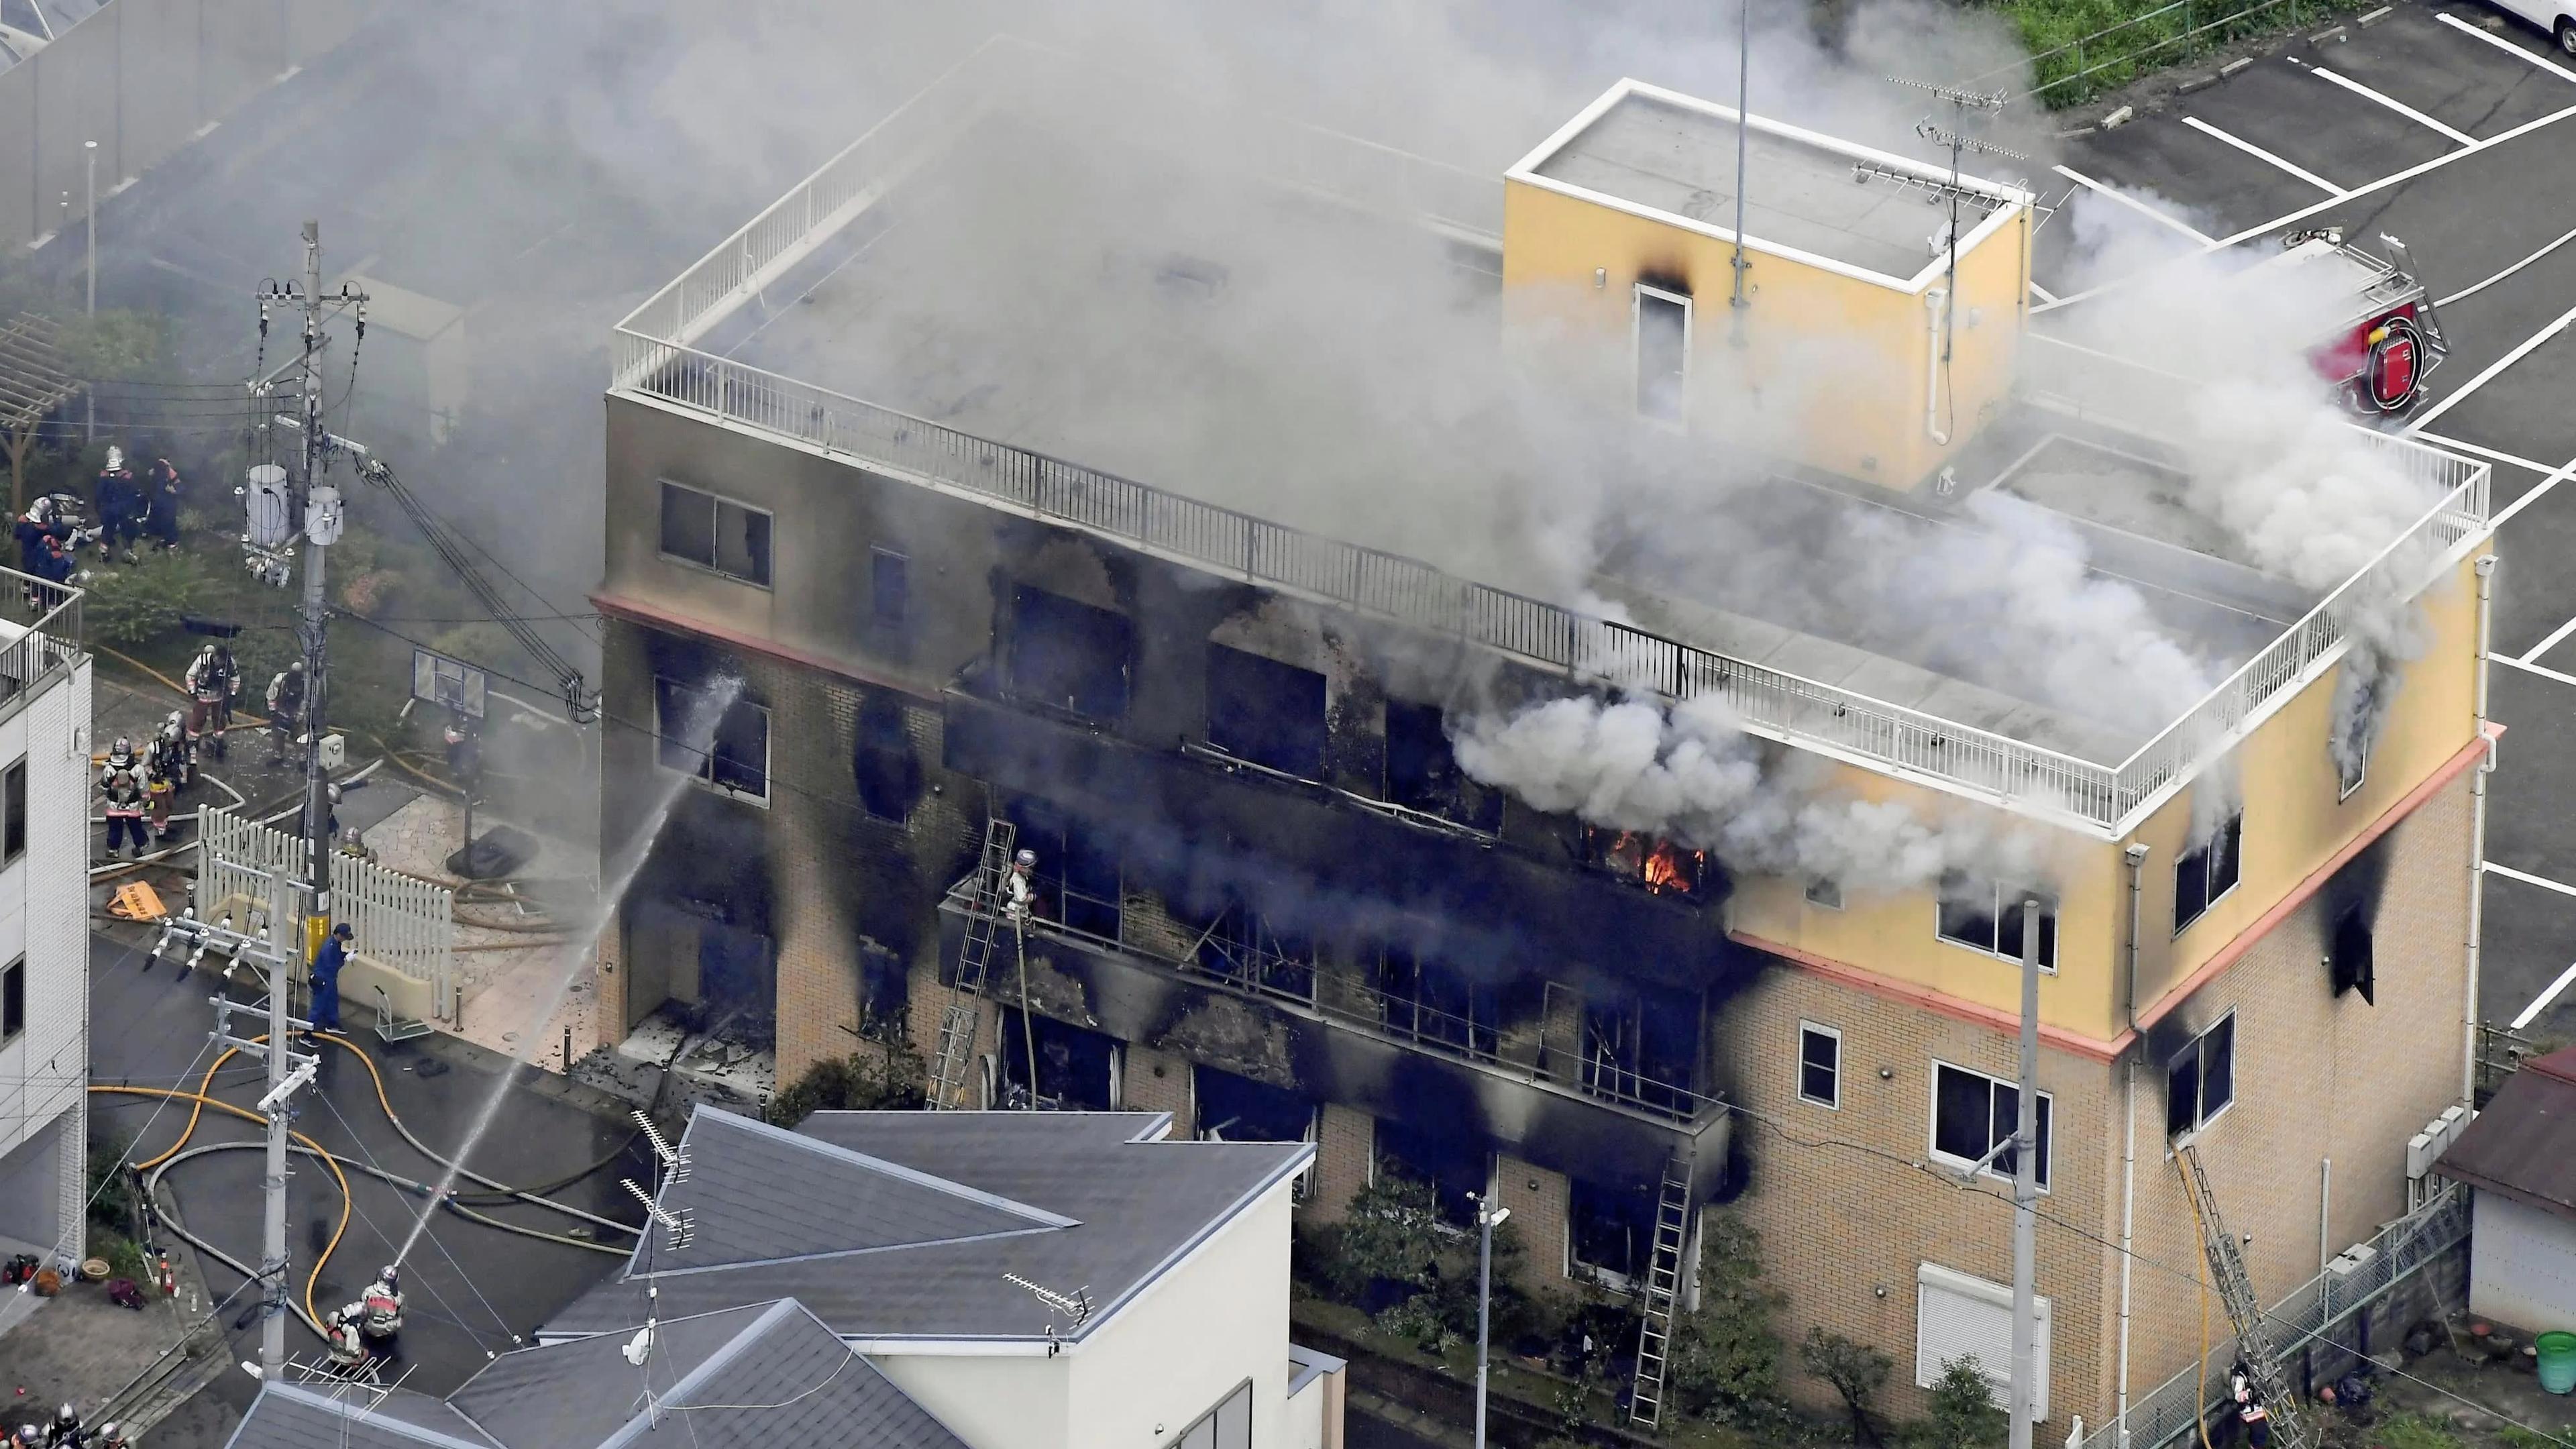 بعد الحريق الهائل .. يُغلق استوديو كيوتو أنميشن باب التبرعات!